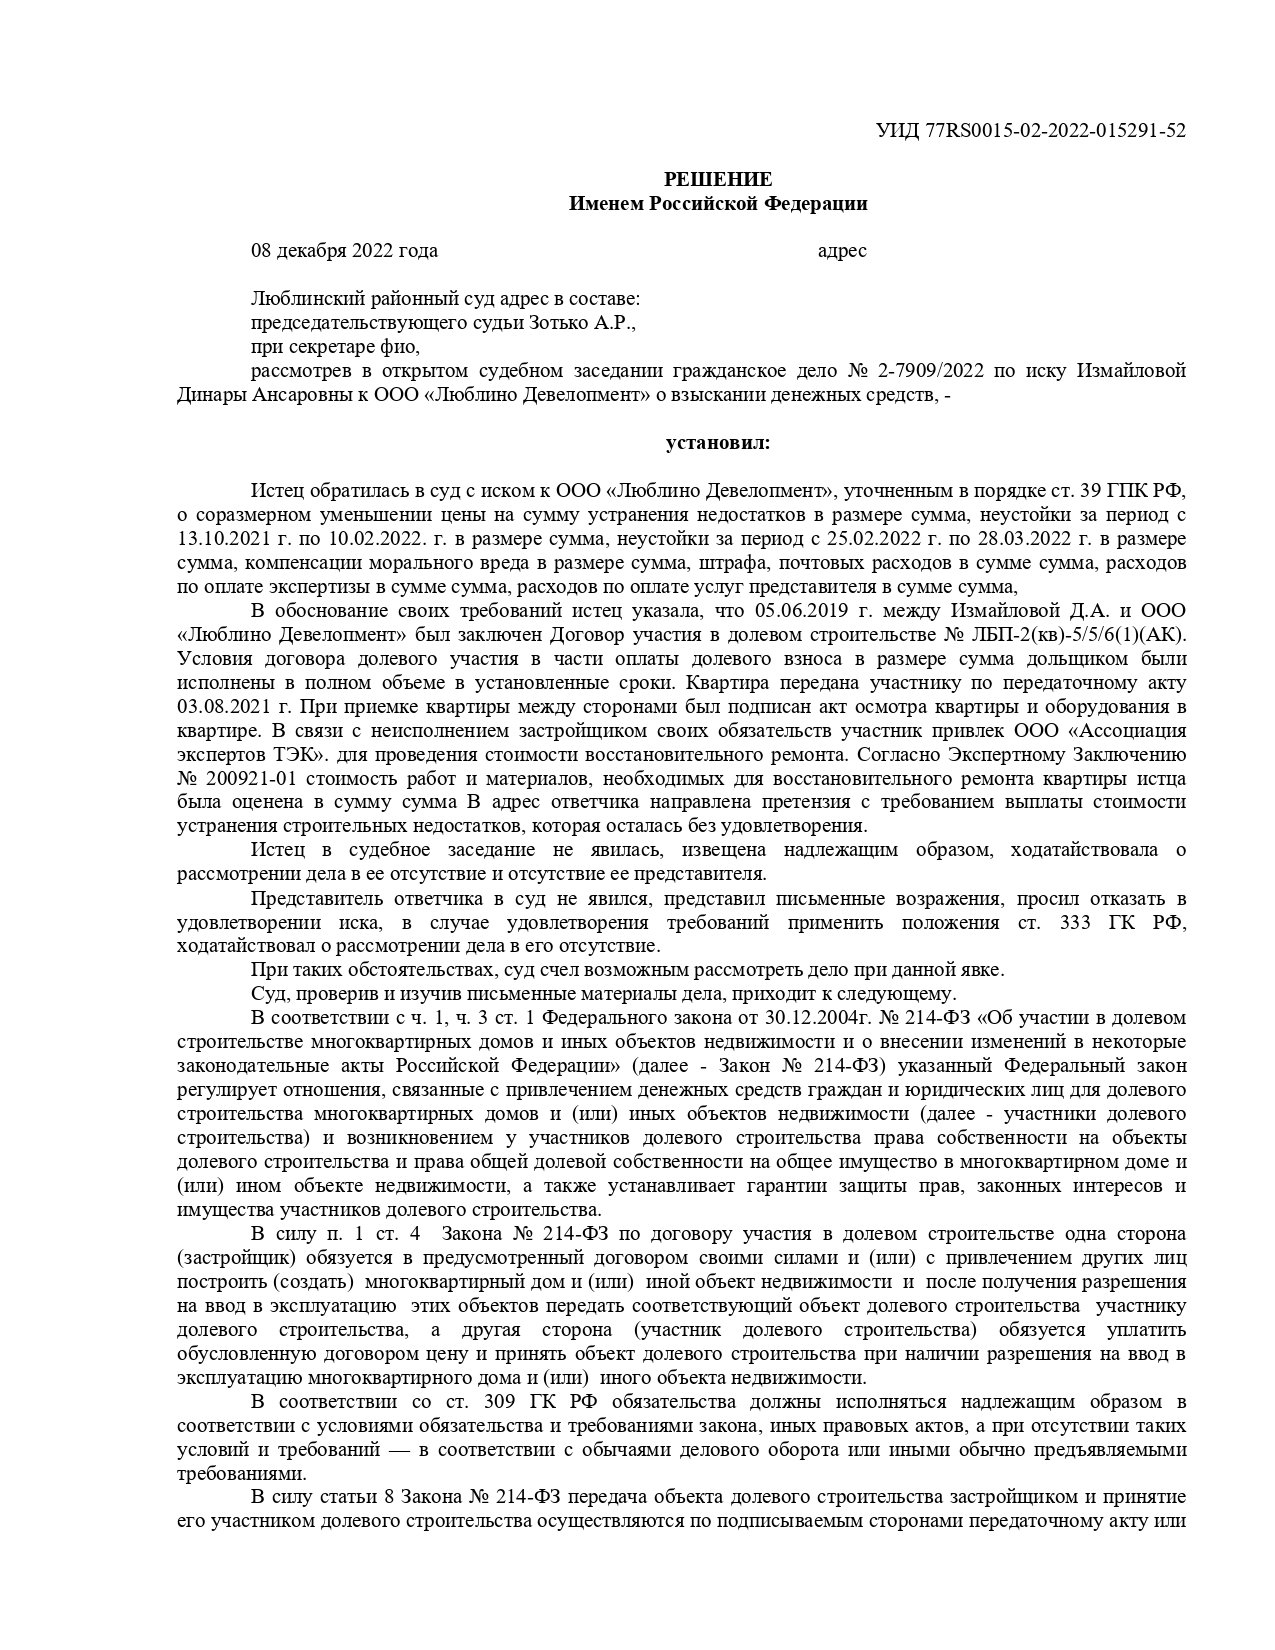 № 1 Суд обязал застройщика выплатить миллион рублей компенсации расходов по устранению недостатков выполненного ремонта